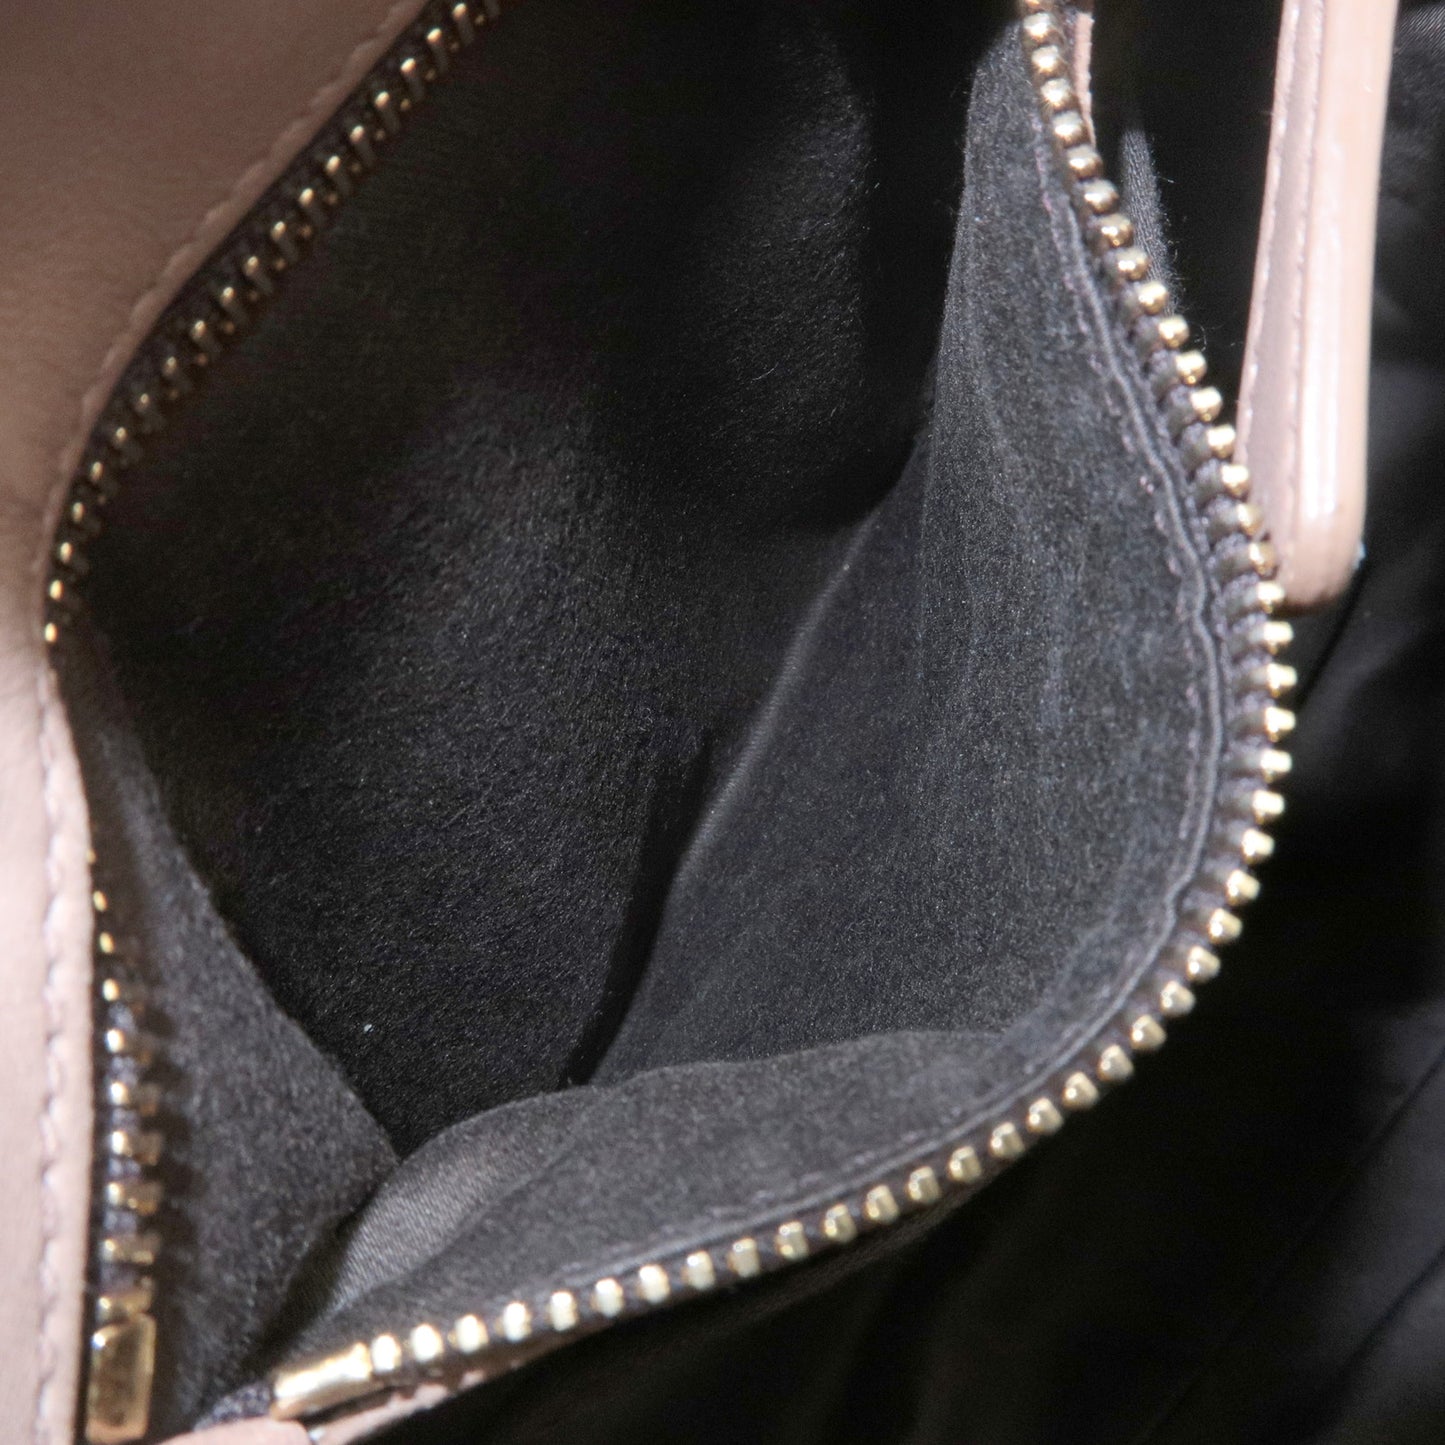 MIU MIU Matelasse Leather 2Way Bag Hand Bag Pink Beige